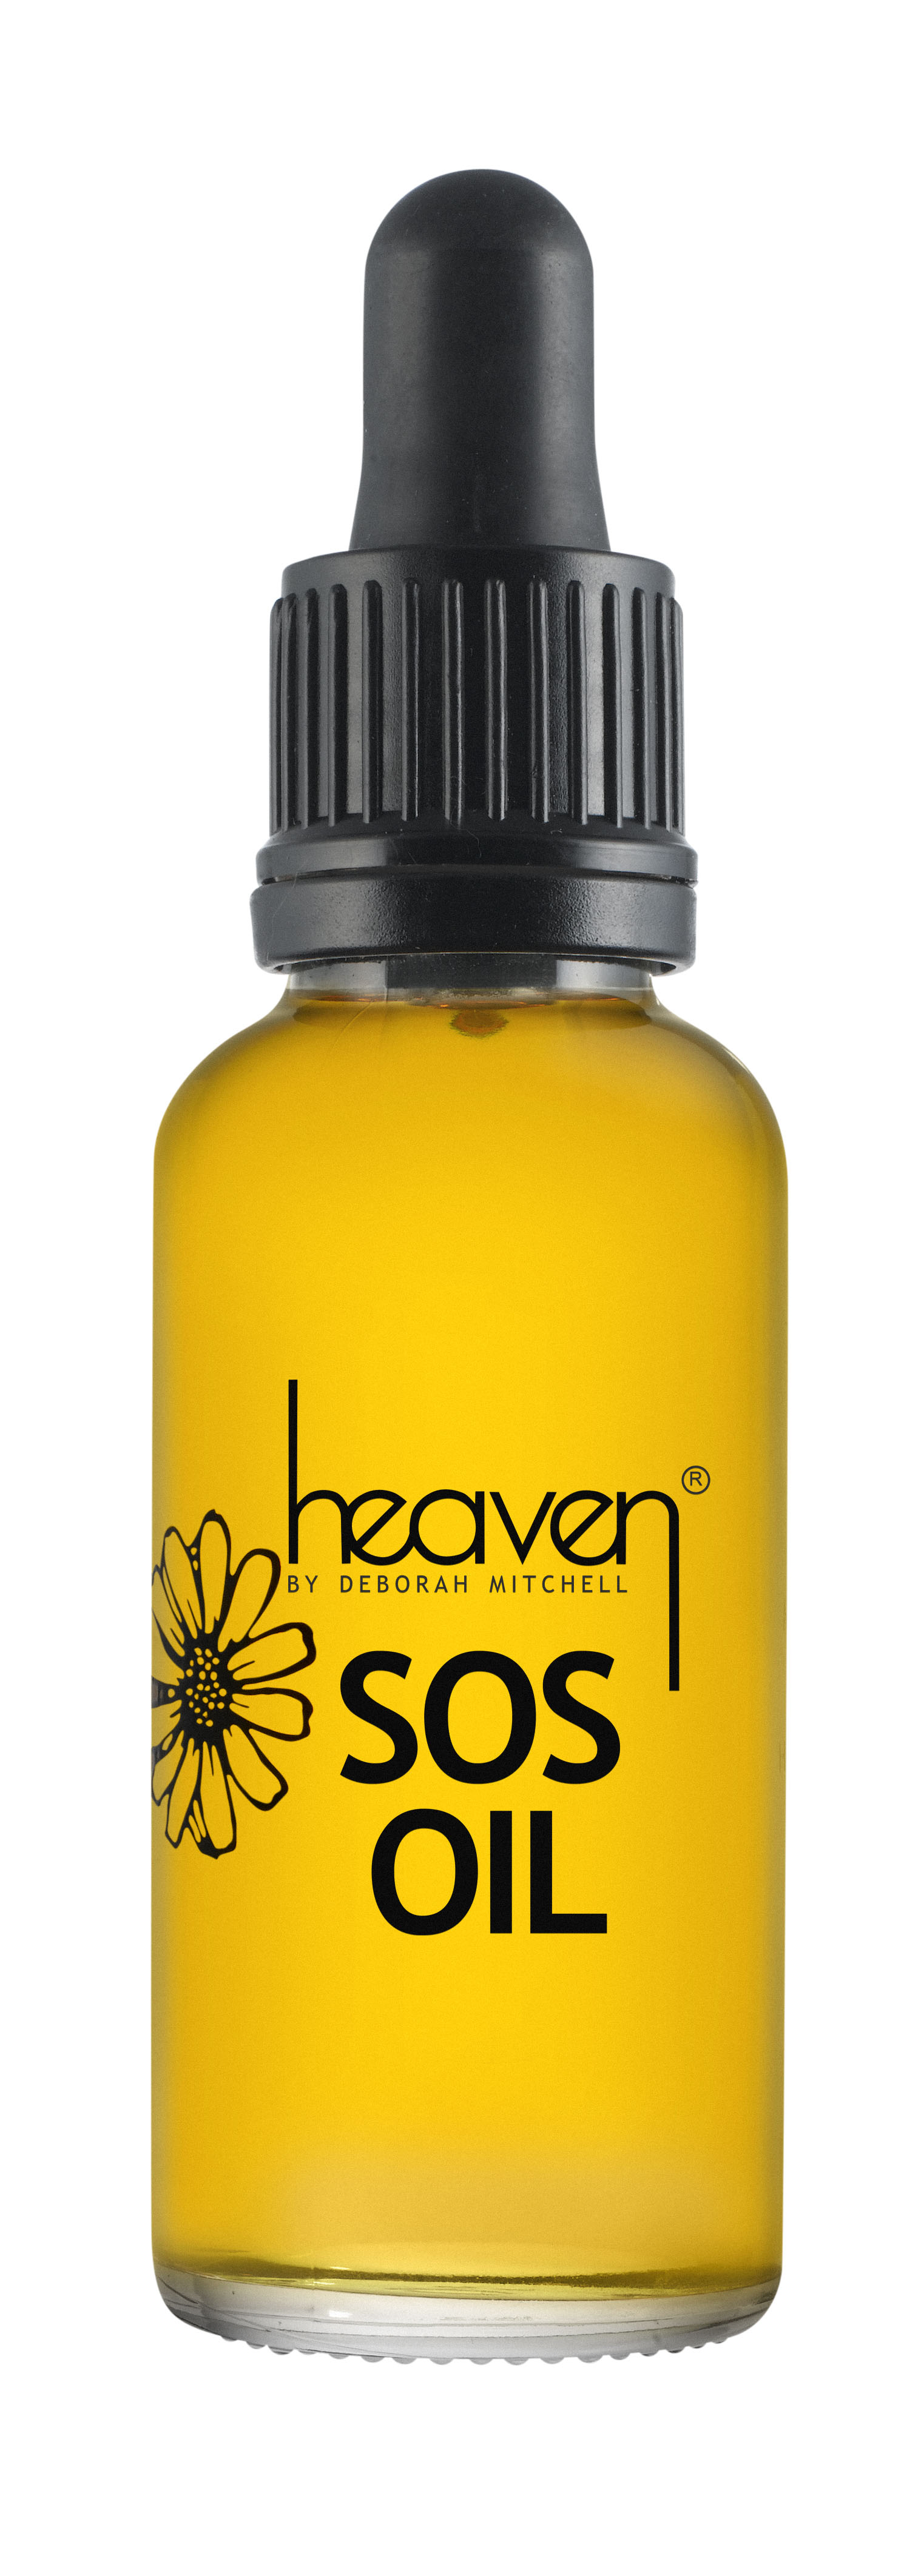 Heaven SOS Oil 